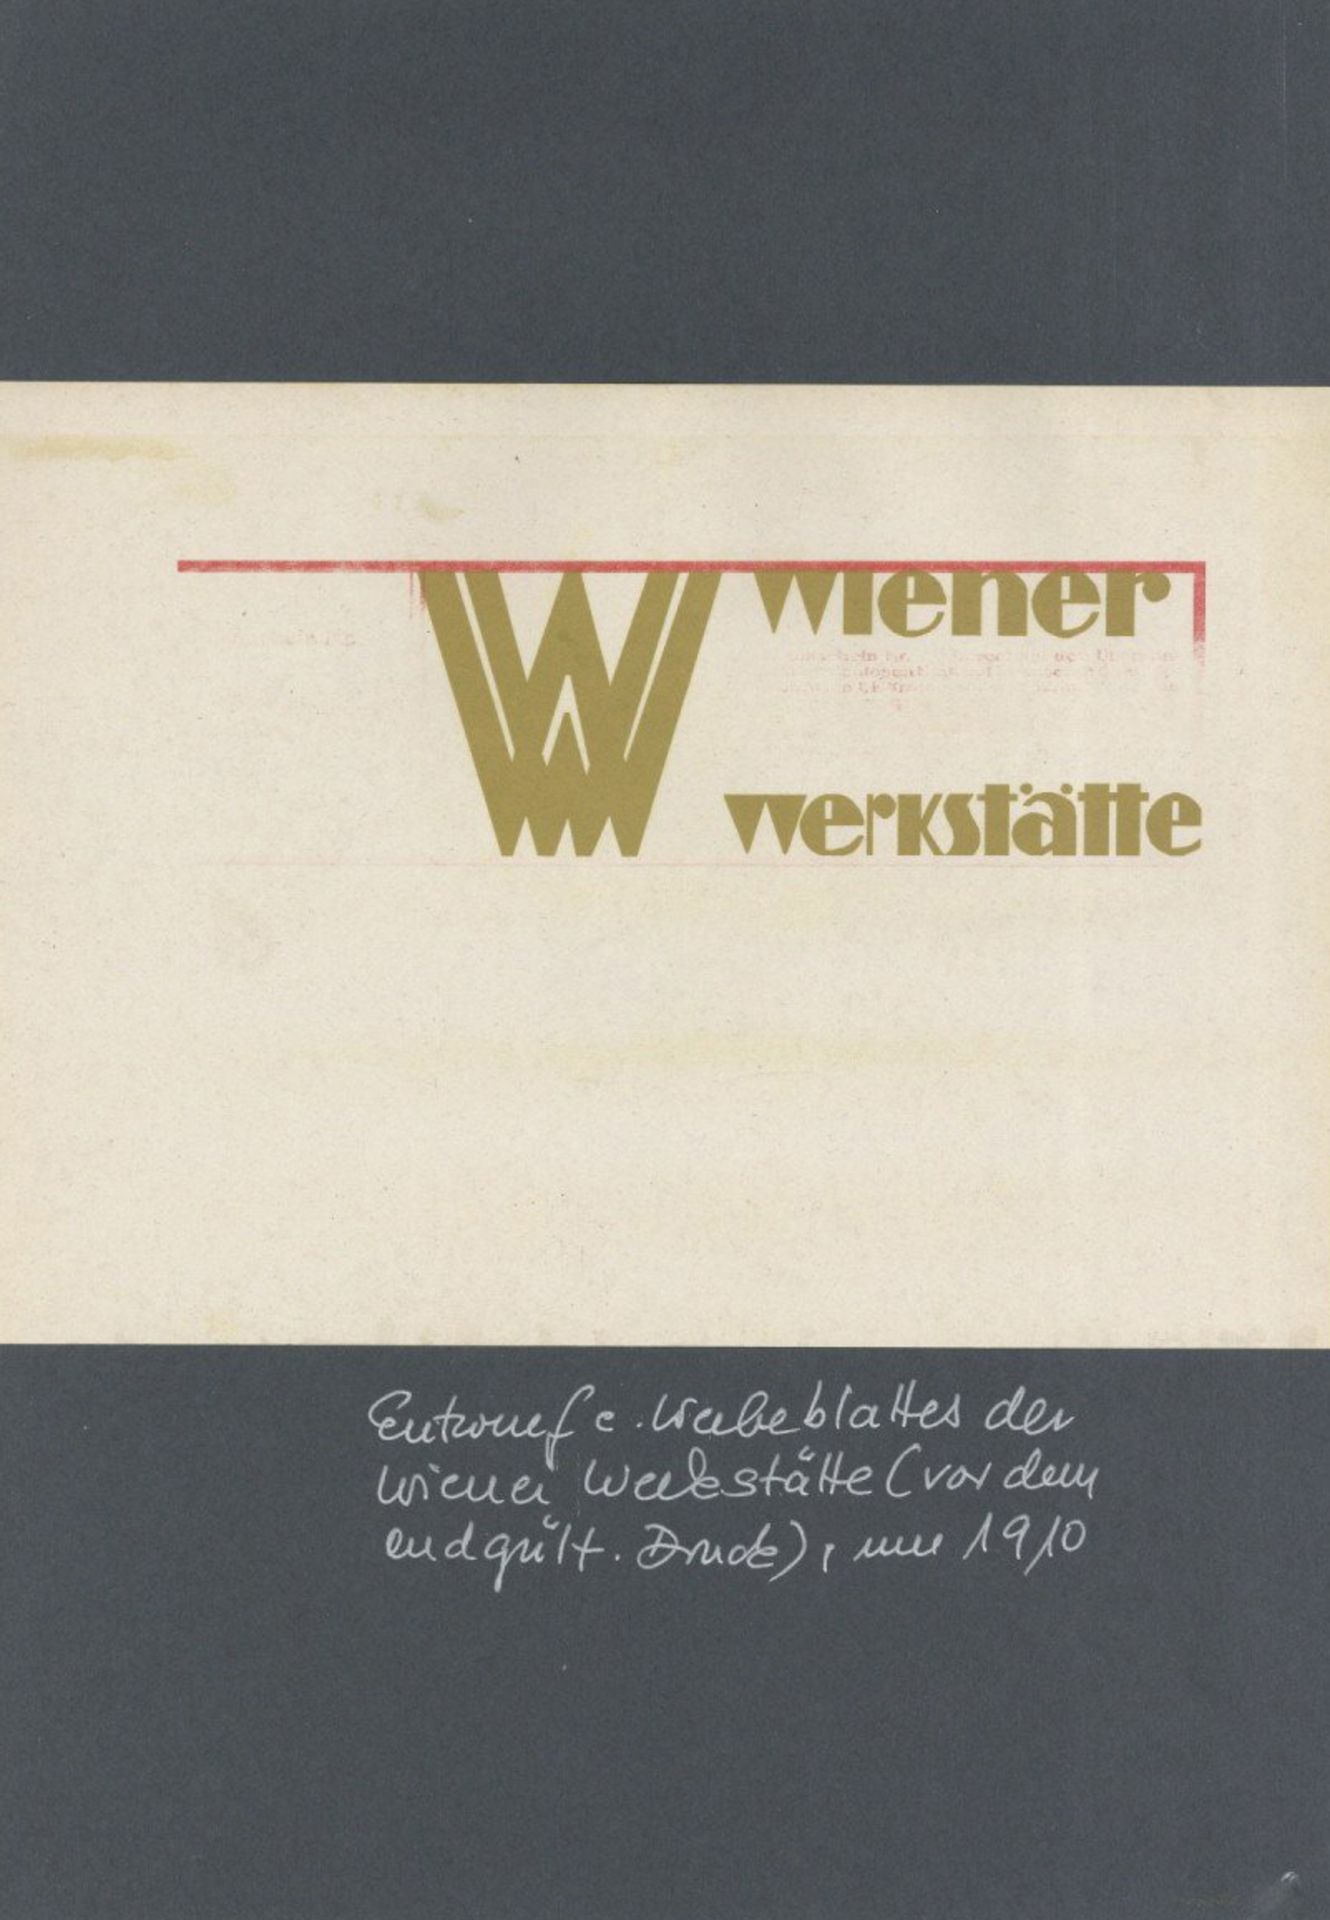 Wiener Werkstätte Entwurf eines Werbeblattes vor dem endgültigen Druck um 1910 I-II